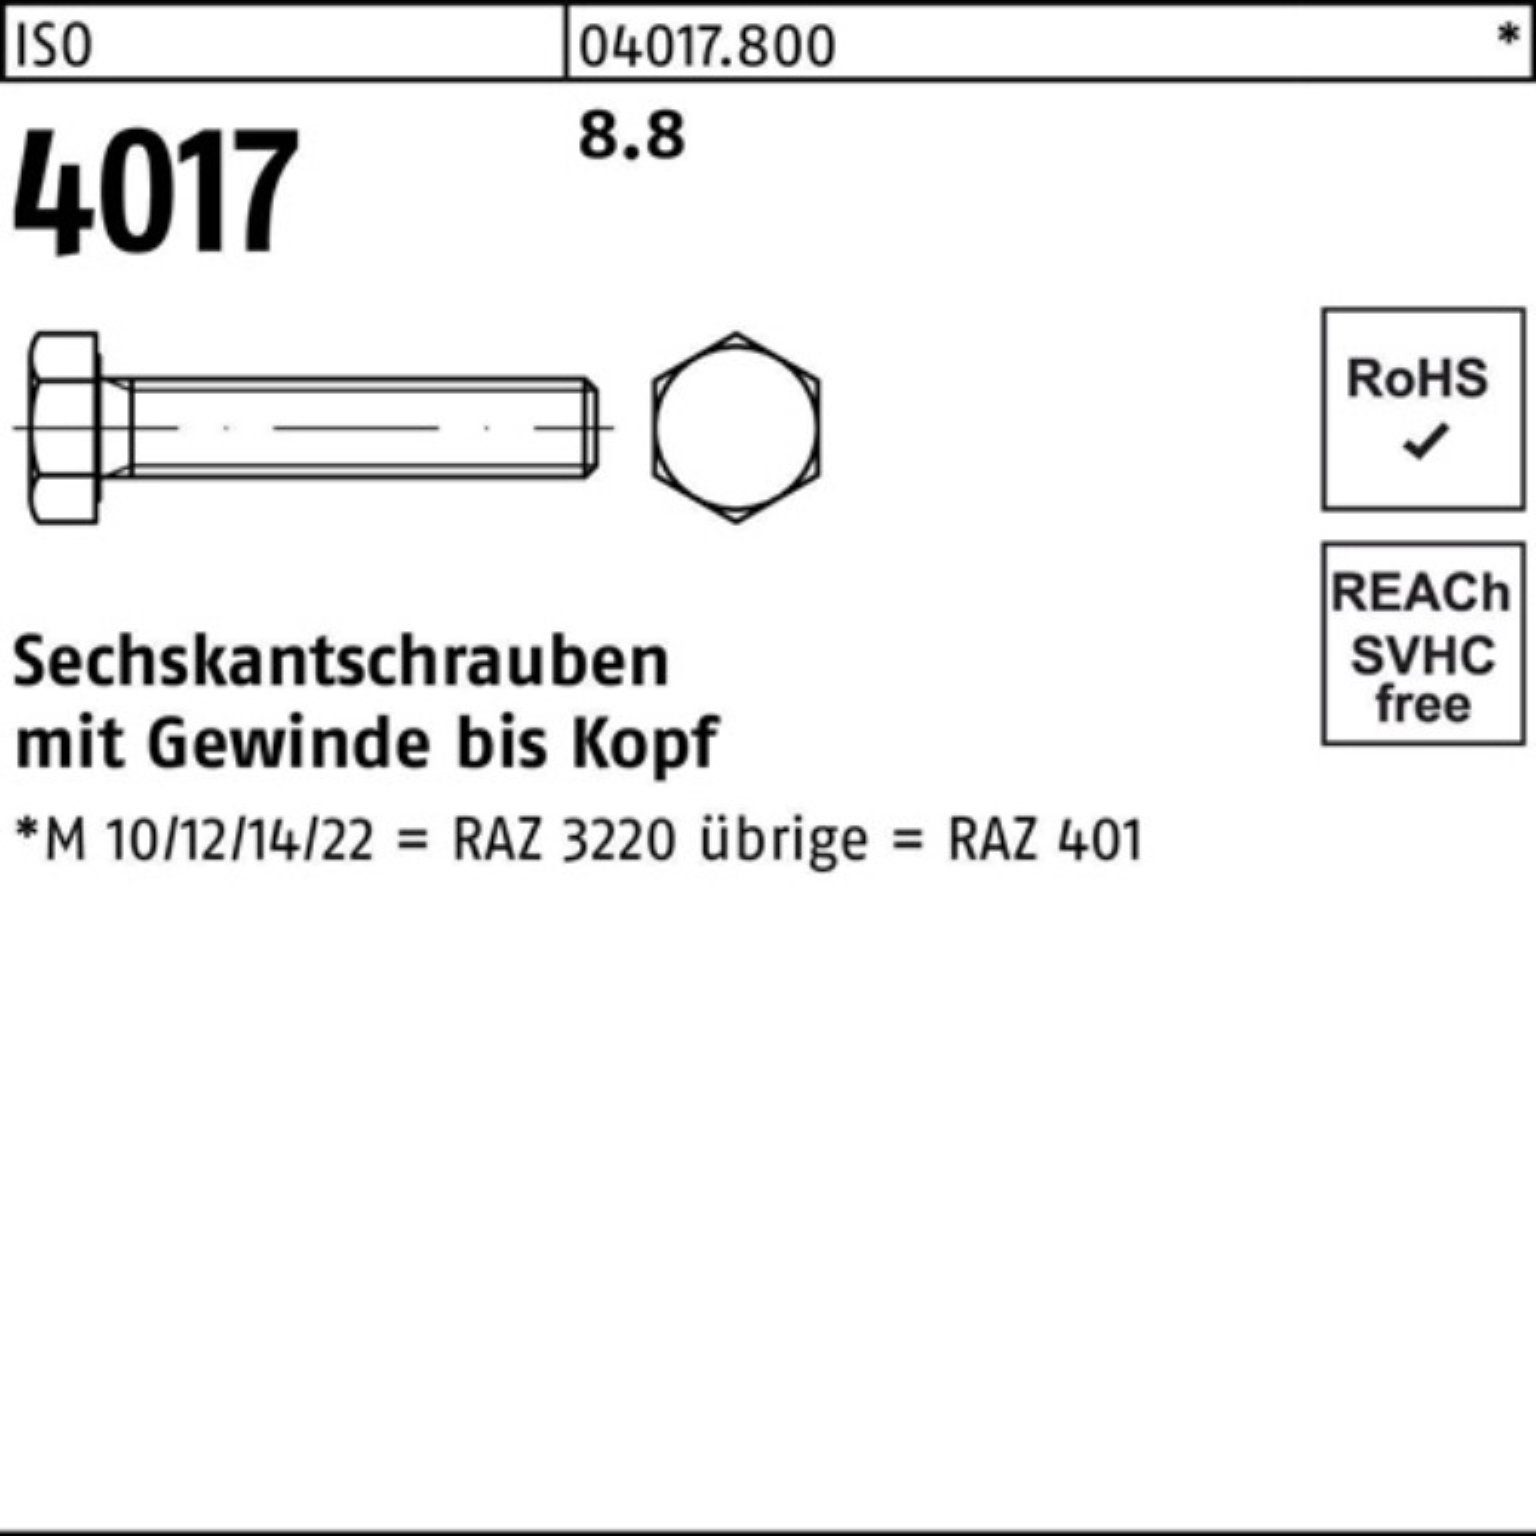 Bufab Sechskantschraube 100er M30x 4017 280 ISO Stück 1 Sechskantschraube ISO Pack VG 8.8 401